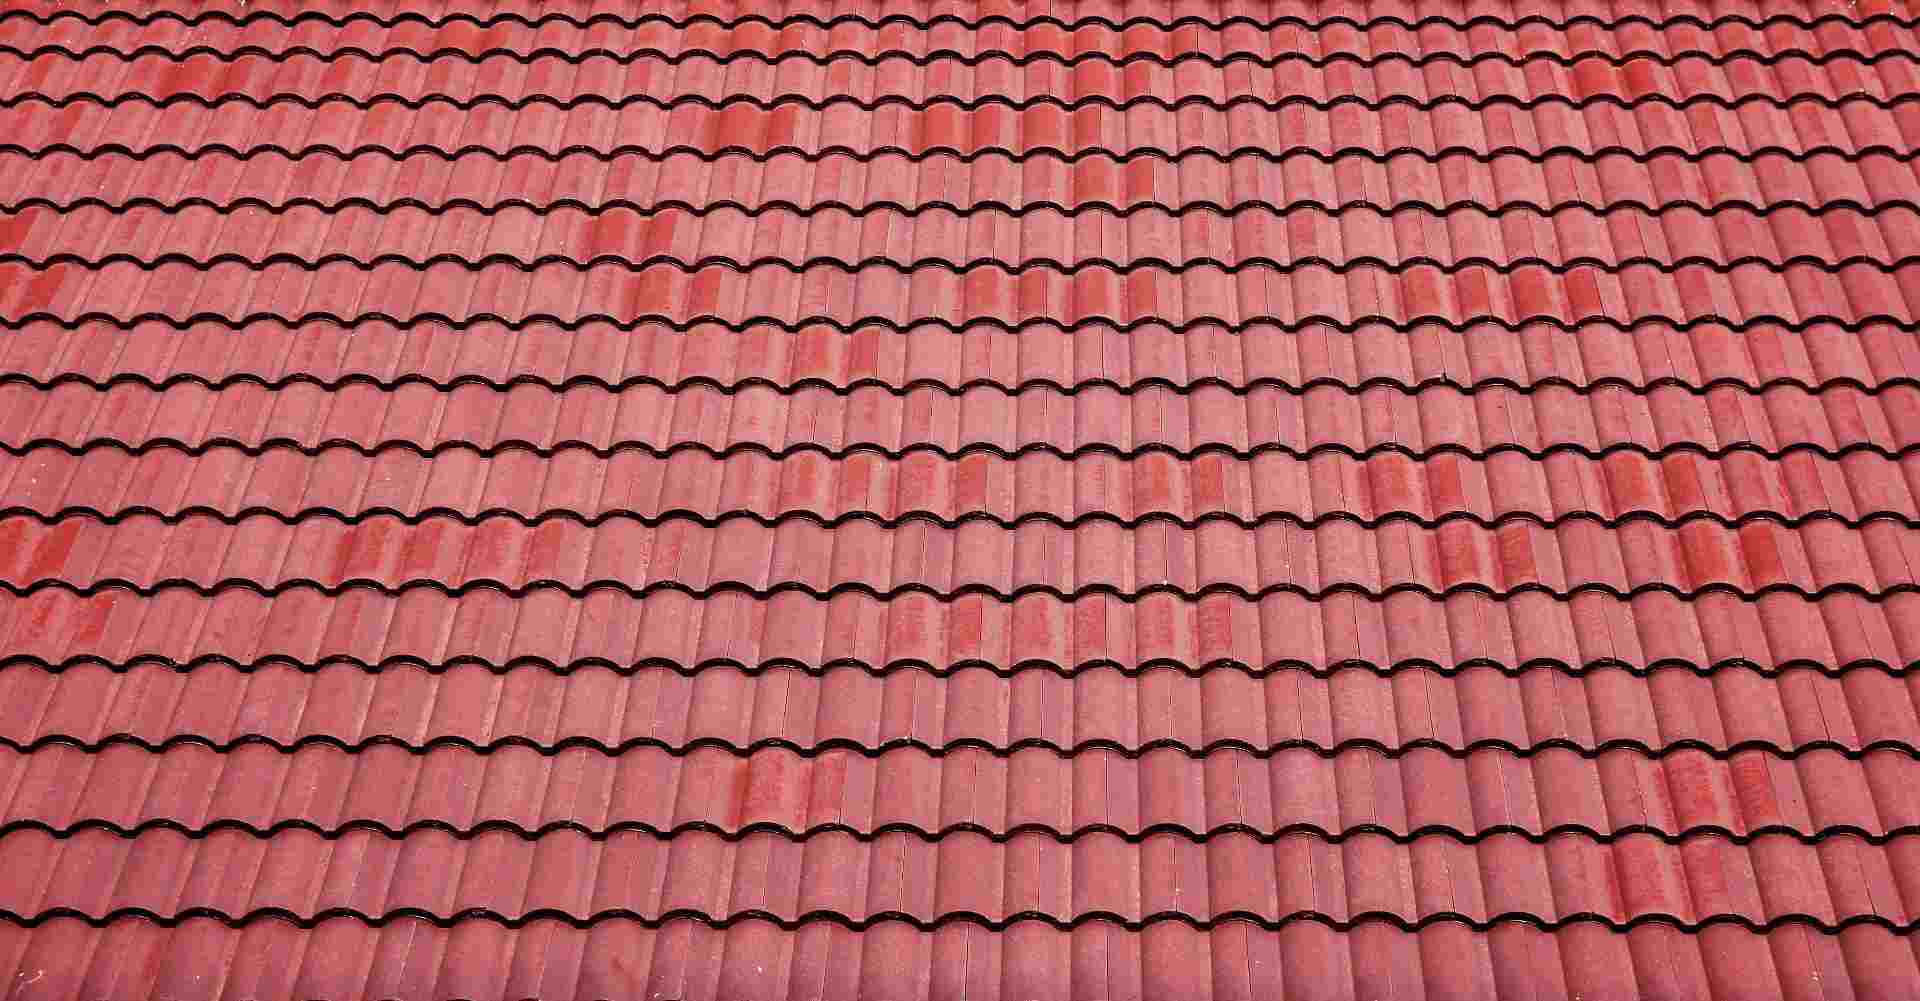 Ceramic Roofing